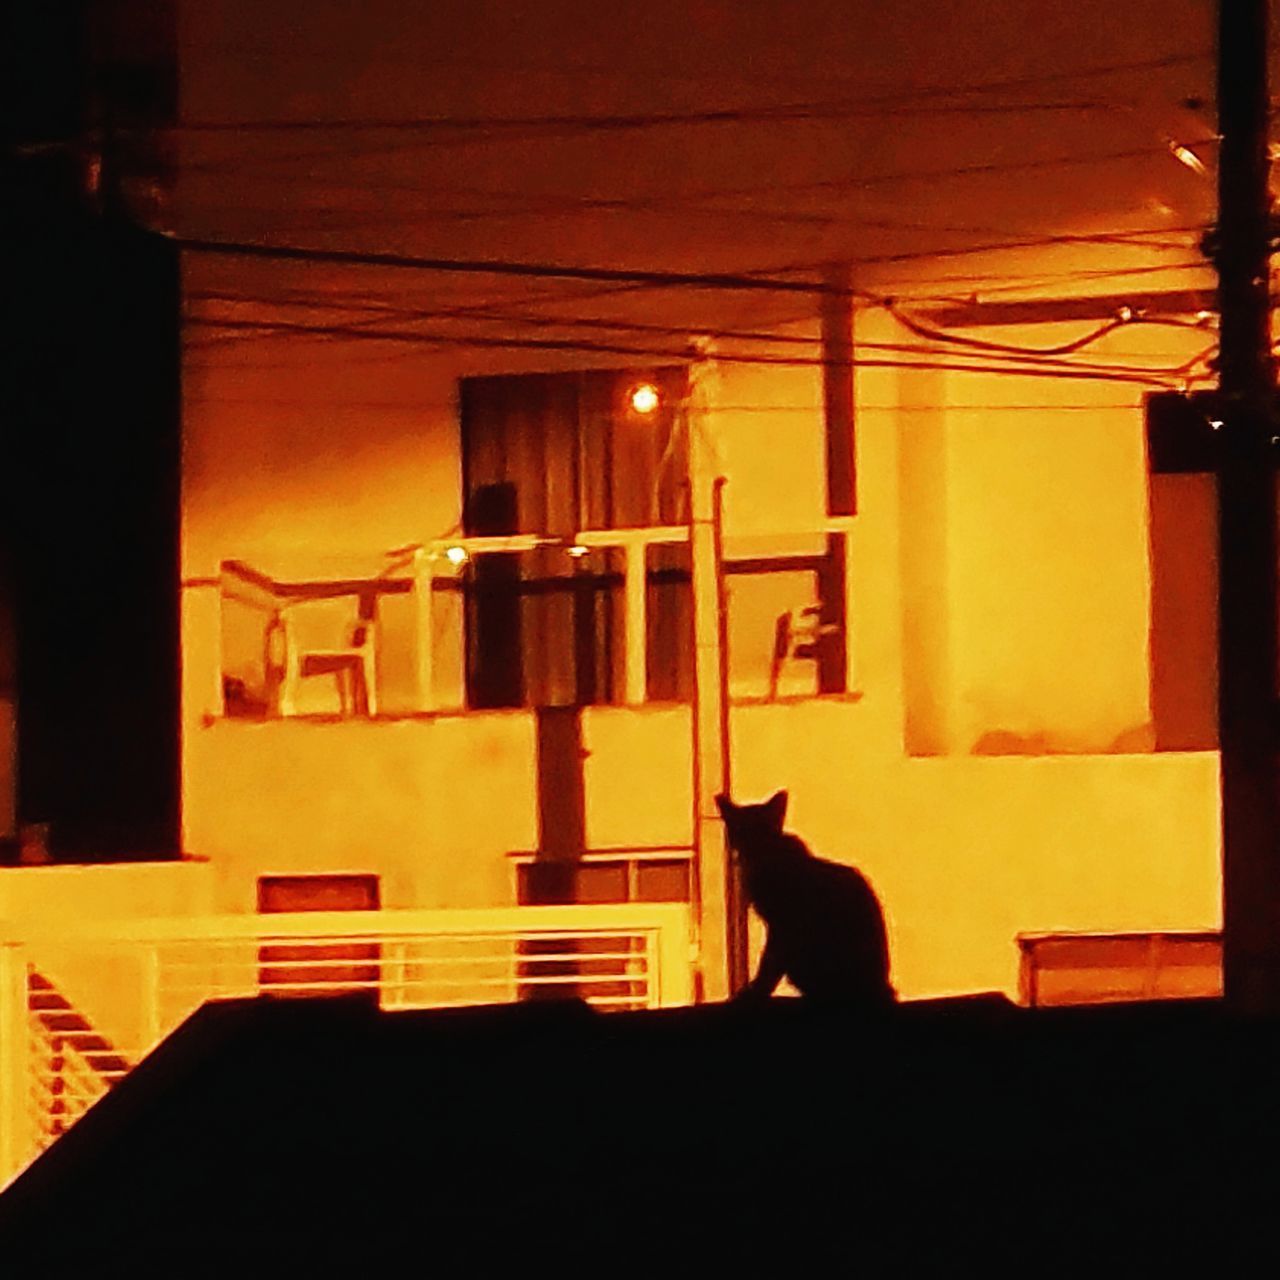 CAT SITTING IN ILLUMINATED LAMP